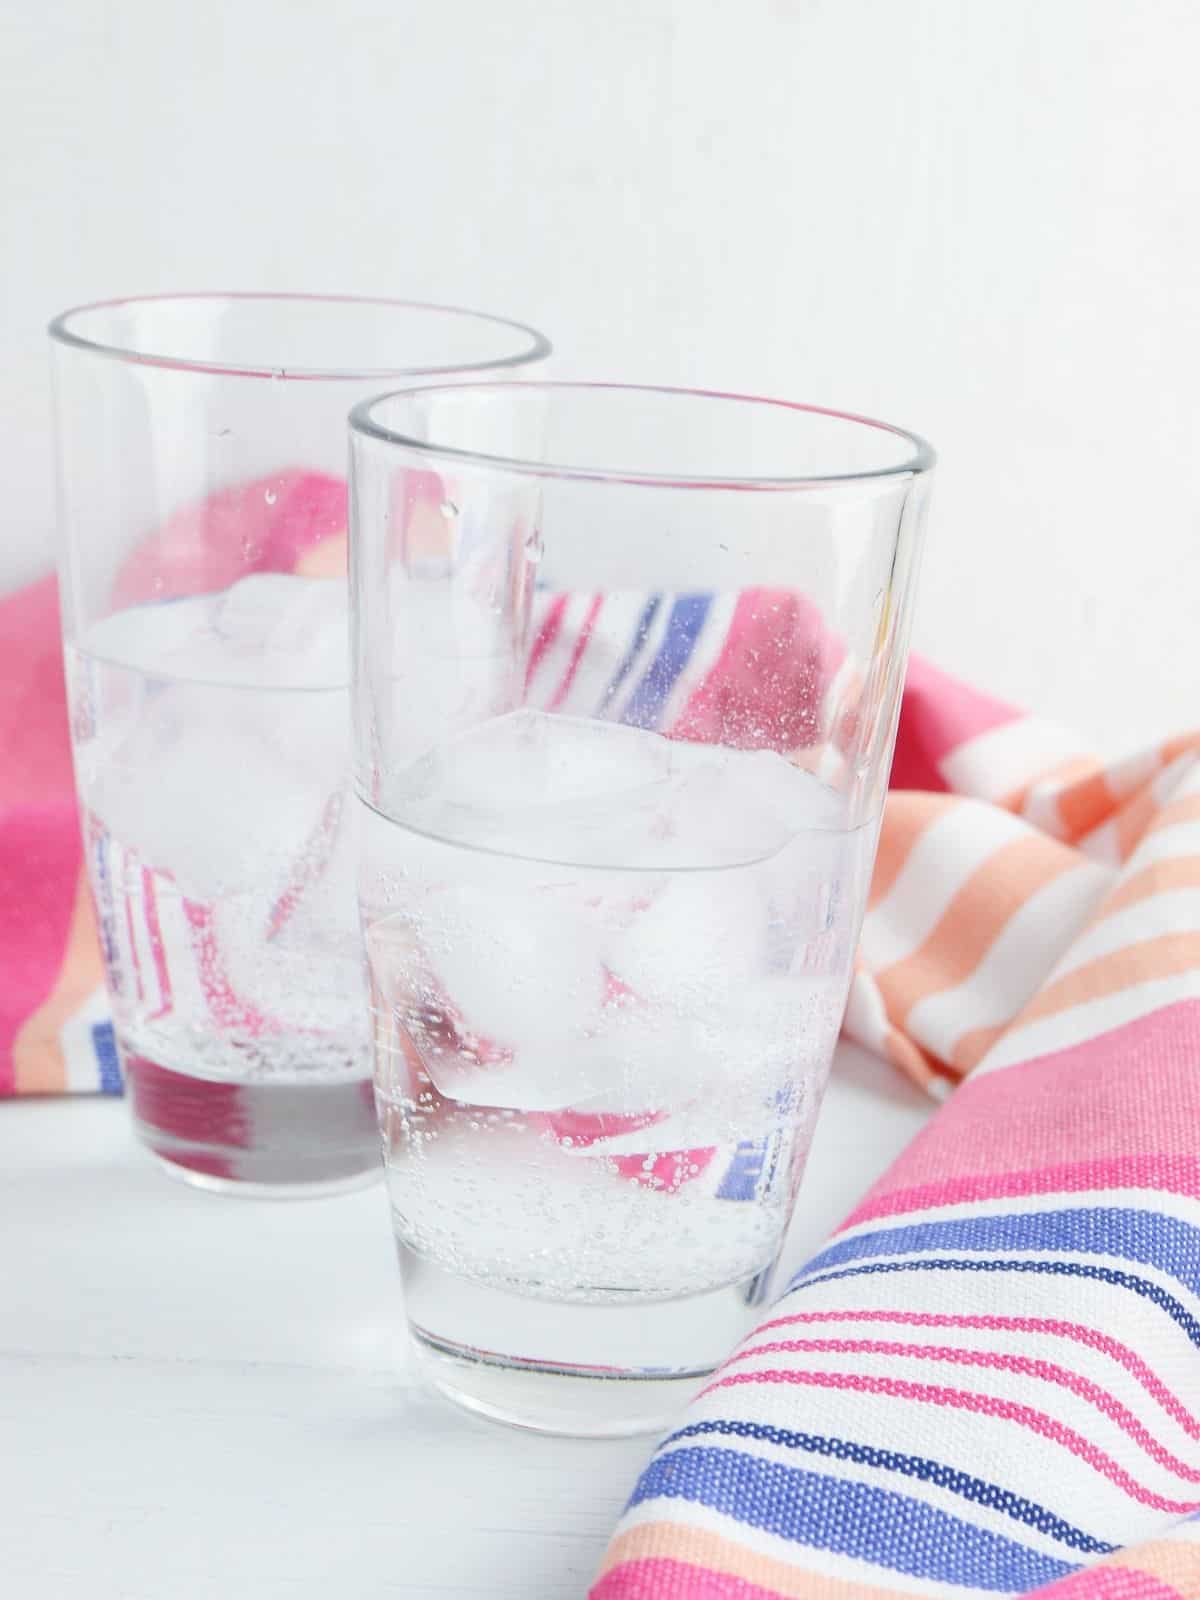 2 glasses of Sprite soda in striped towel.